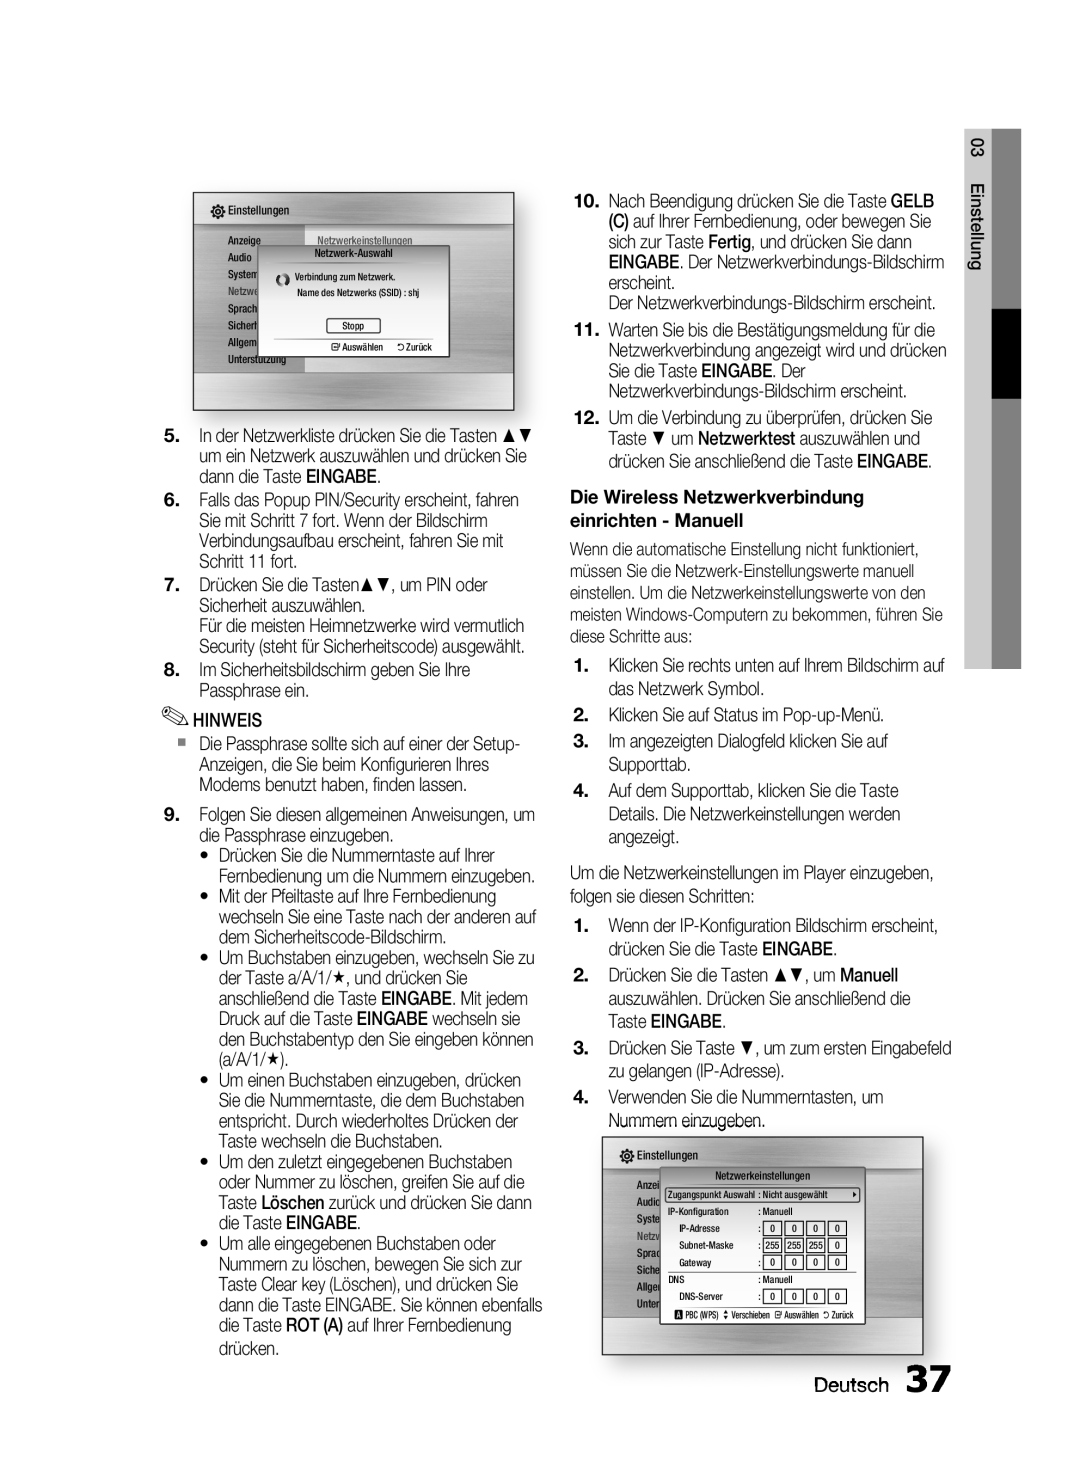 Samsung HT-C6200/XEF manual Deutsch, Die Wireless Netzwerkverbindung einrichten - Manuell 